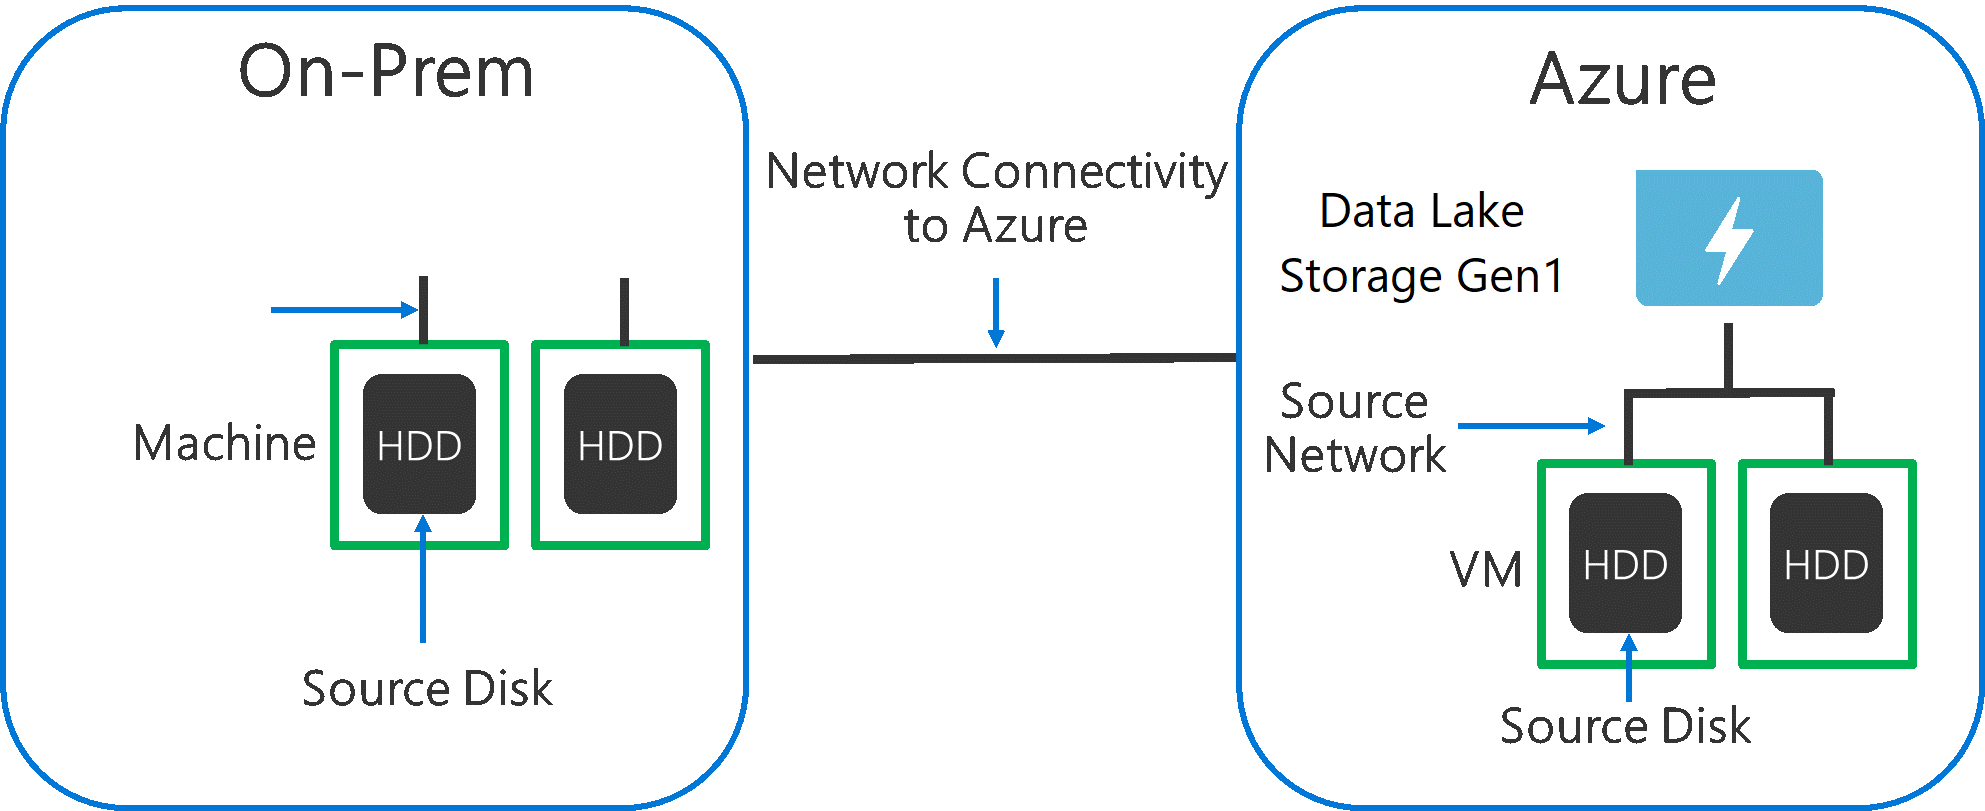 ソース ハードウェア、ソース ネットワーク ハードウェア、および Data Lake Storage Gen1 へのネットワーク接続がボトルネックとなる可能性があることを示す図。